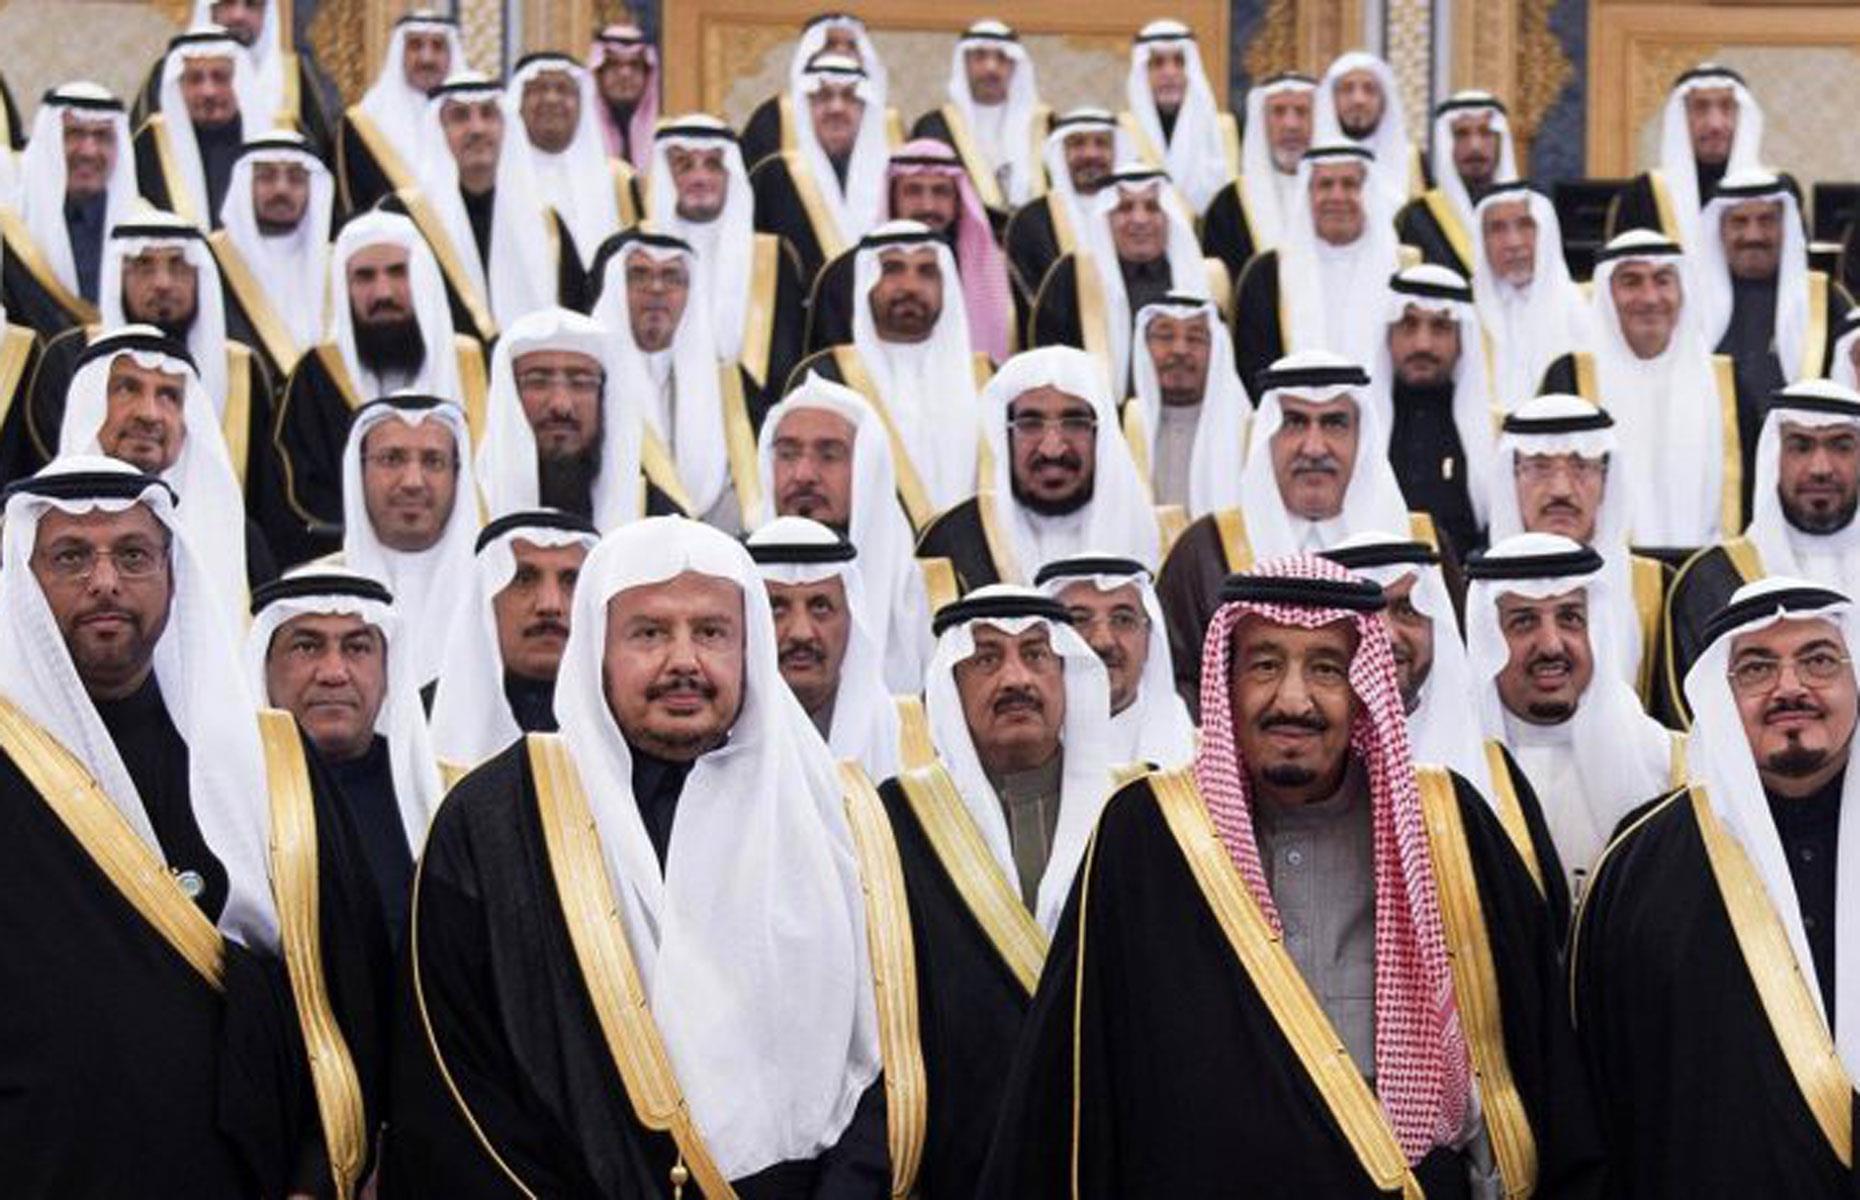 Правление в саудовской аравии. Королевская семья Сауд Аравии. Семья Аль Сауд, Саудовская Аравия. Салман ибн Абдул-Азиз Аль Сауд. Династия саудитов в Саудовской Аравии.